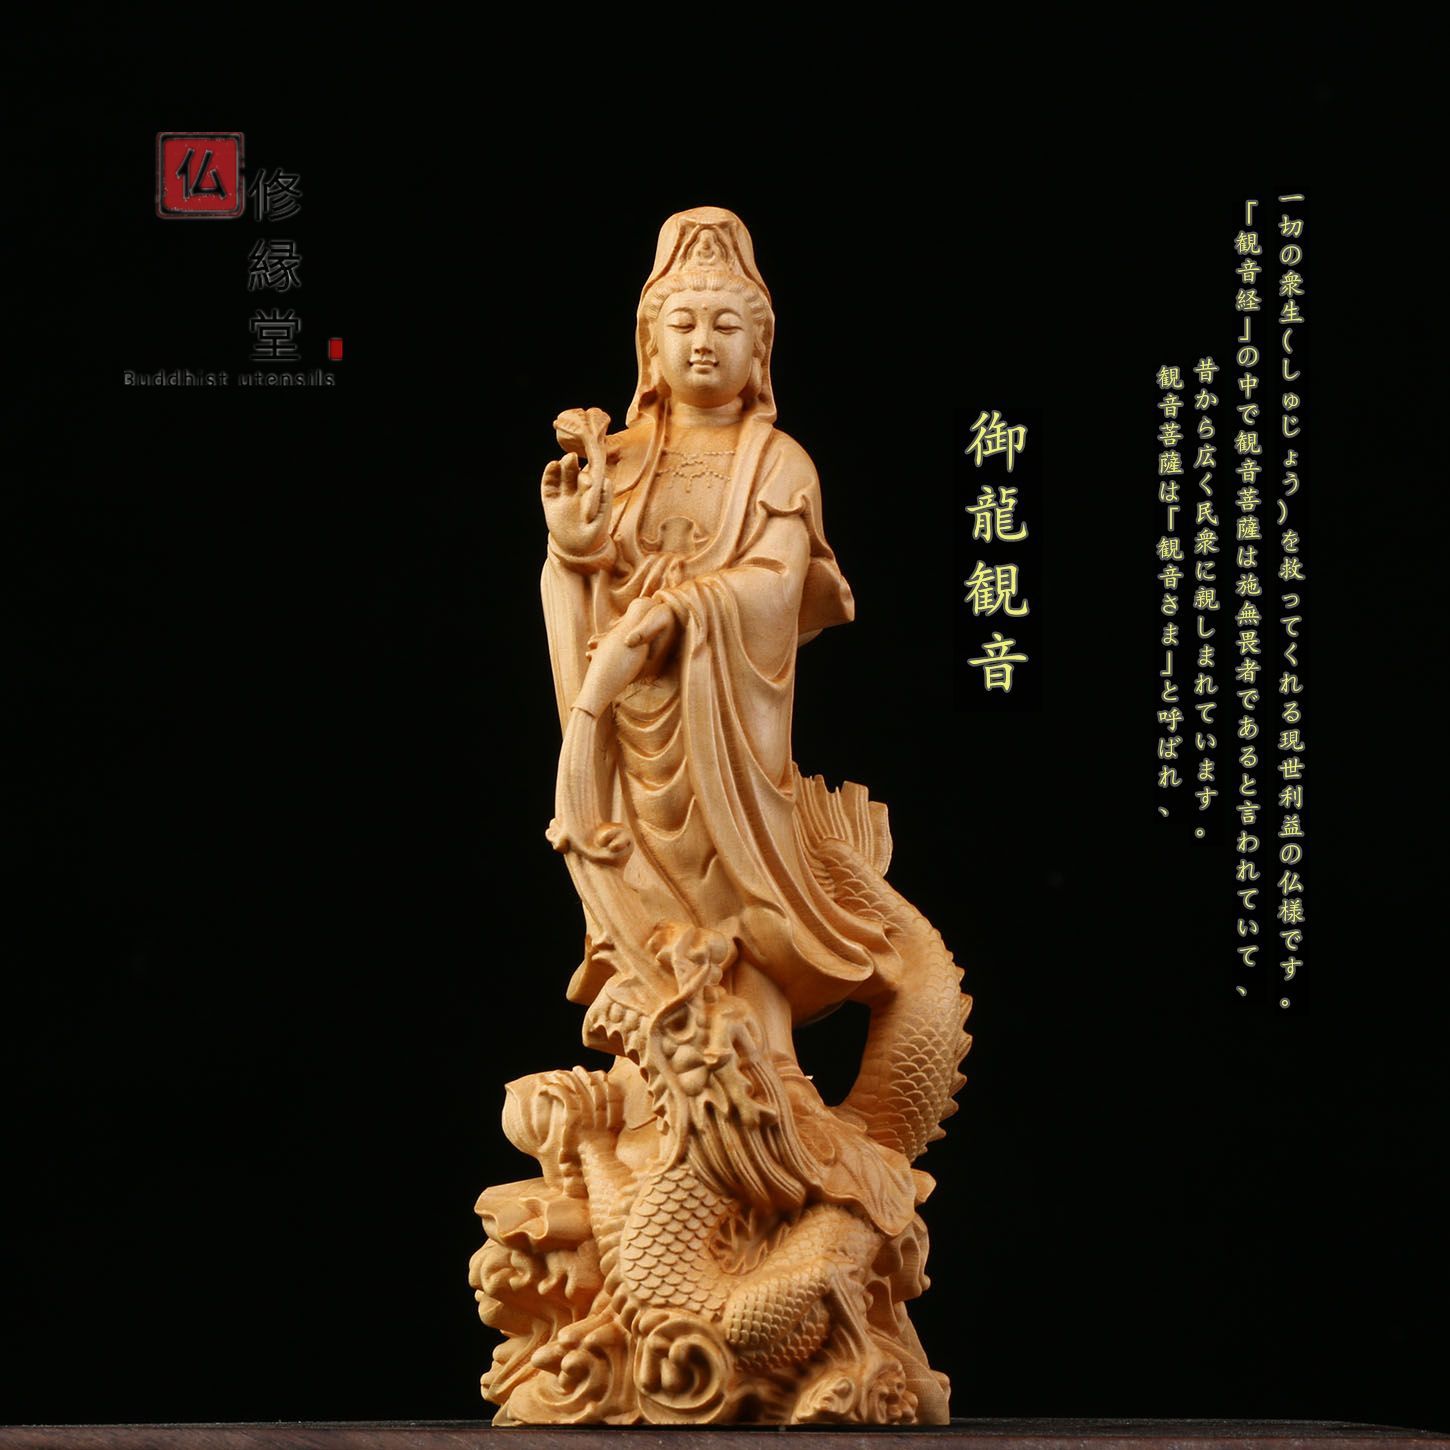 先行予約極上品 木彫仏像 観音菩薩座像 彫刻 本金 切金 柘植材 仏教工芸c 仏像